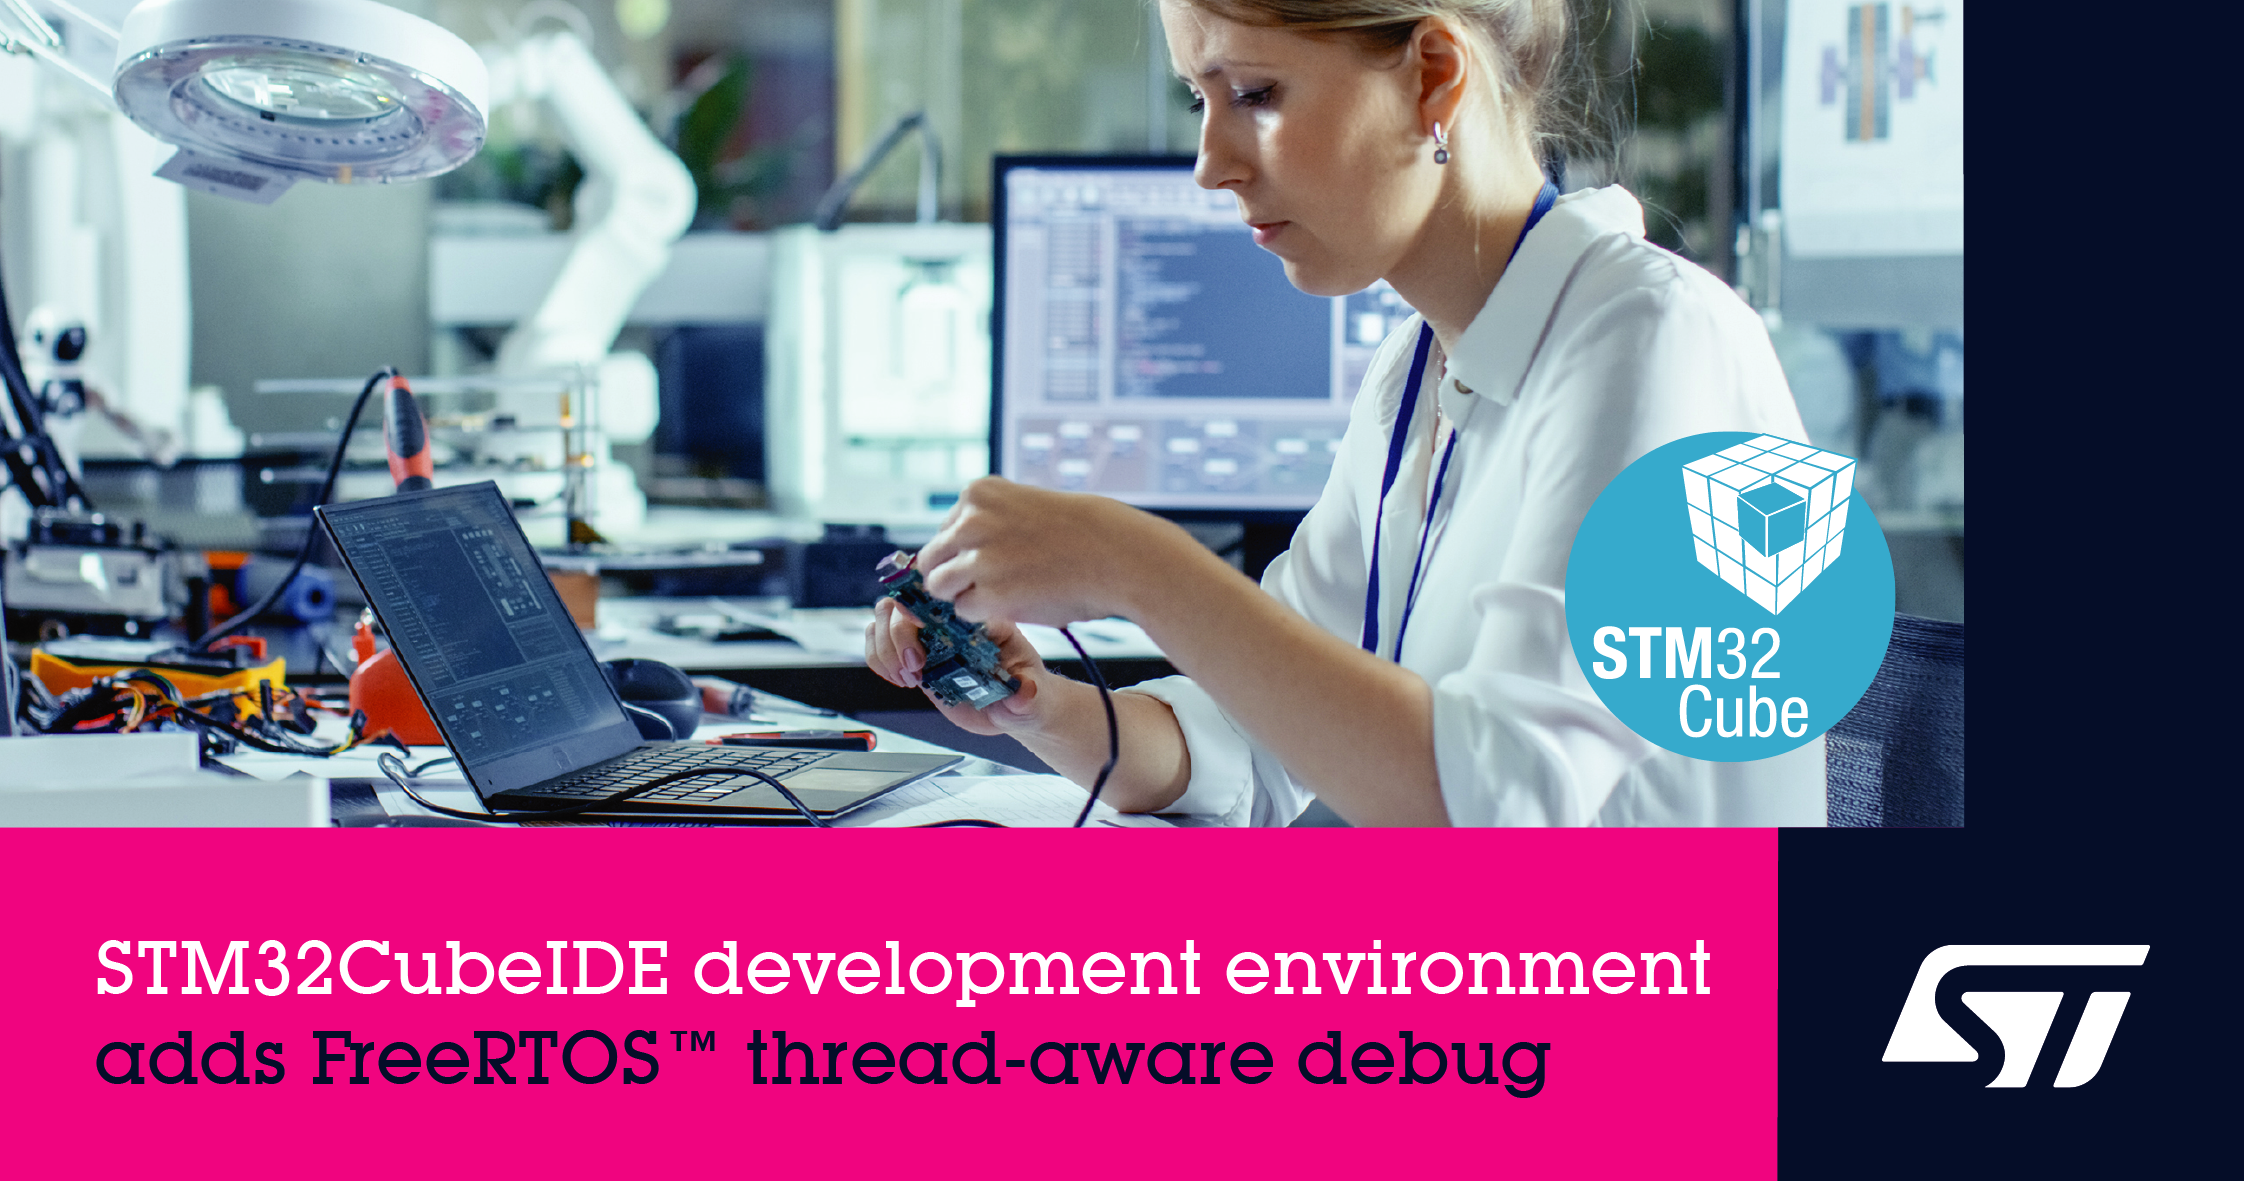 意法半导体的STM32CubeIDE开发环境新增FreeRTOS™线程感知调试功能